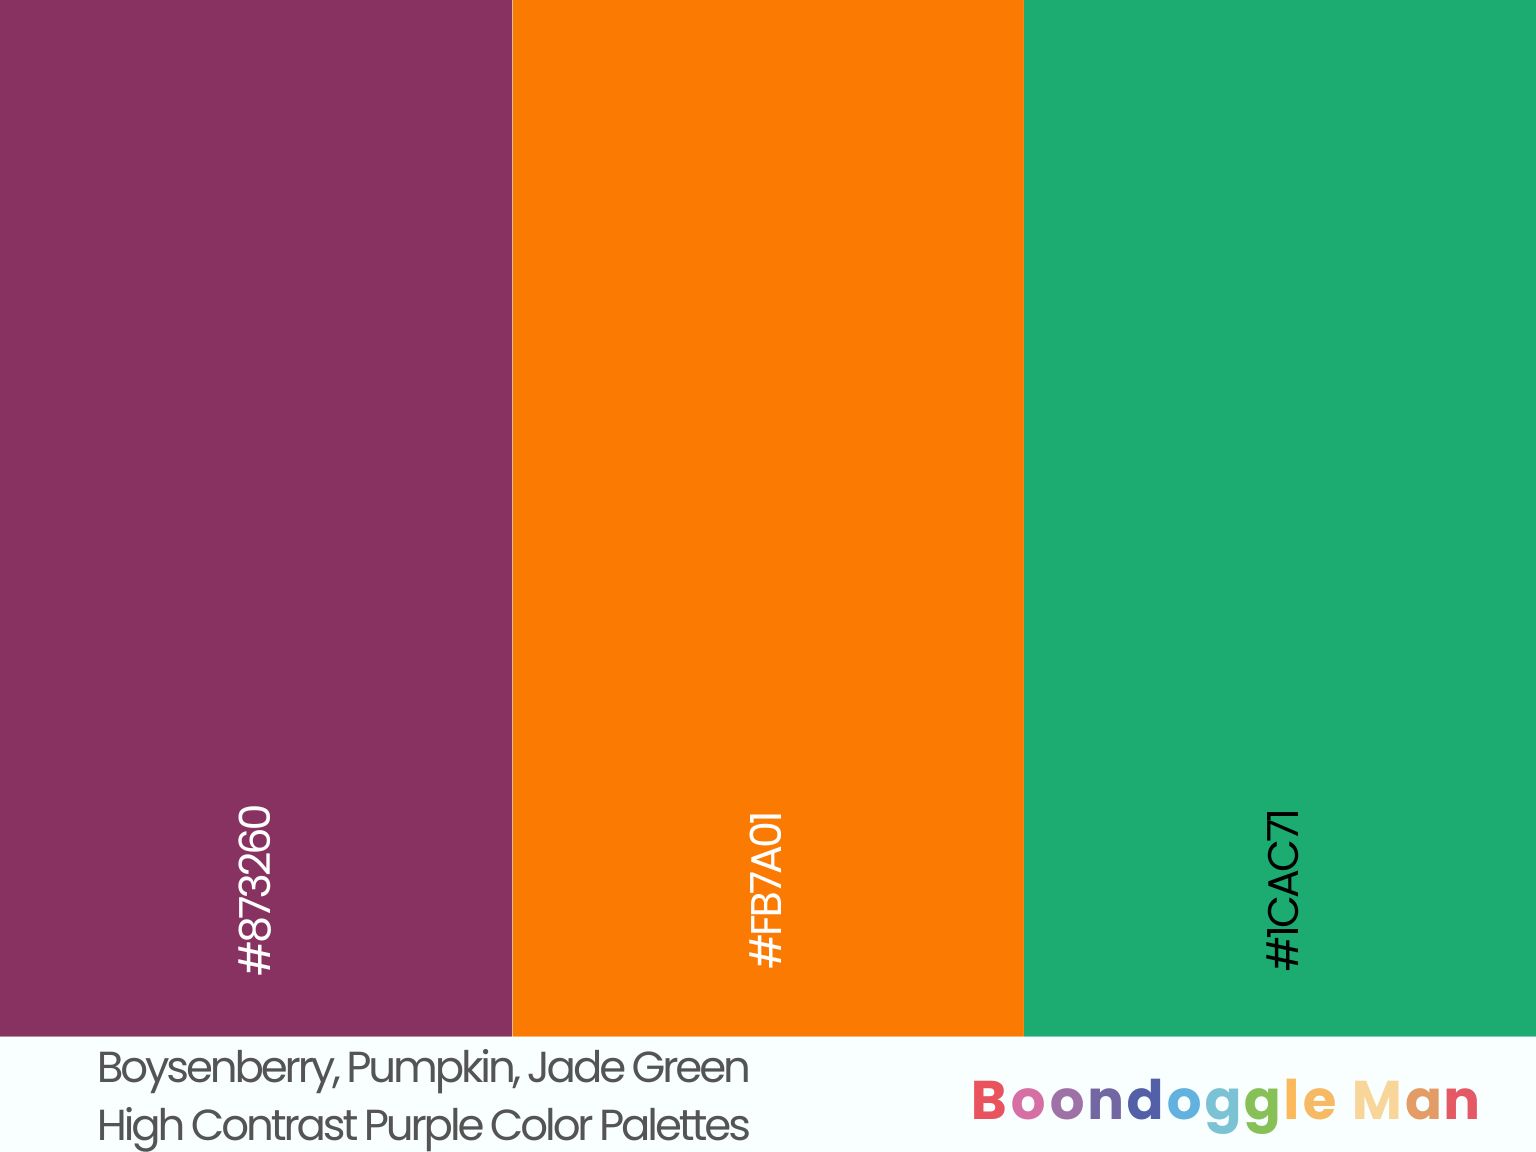 Boysenberry, Pumpkin, Jade Green